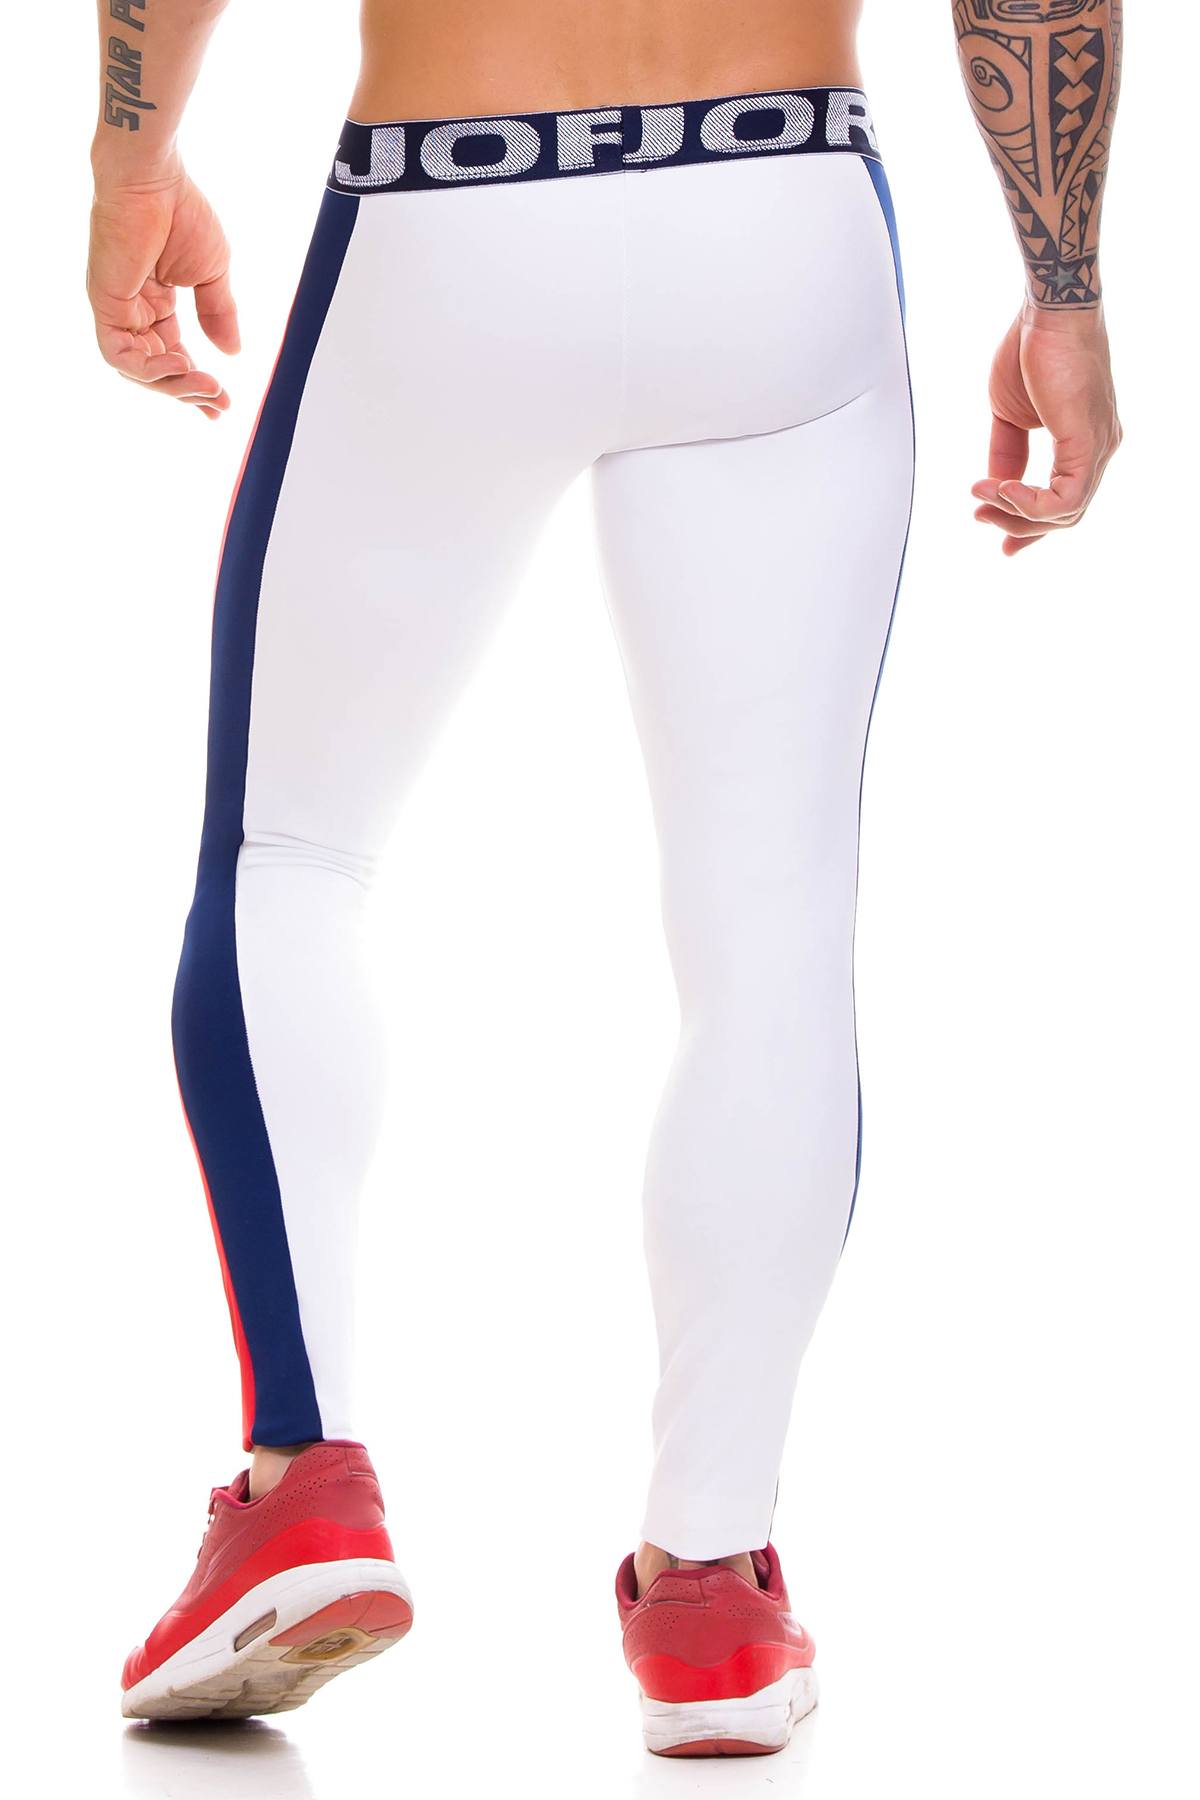 Jor Navy/White Thunder Athletic Pant